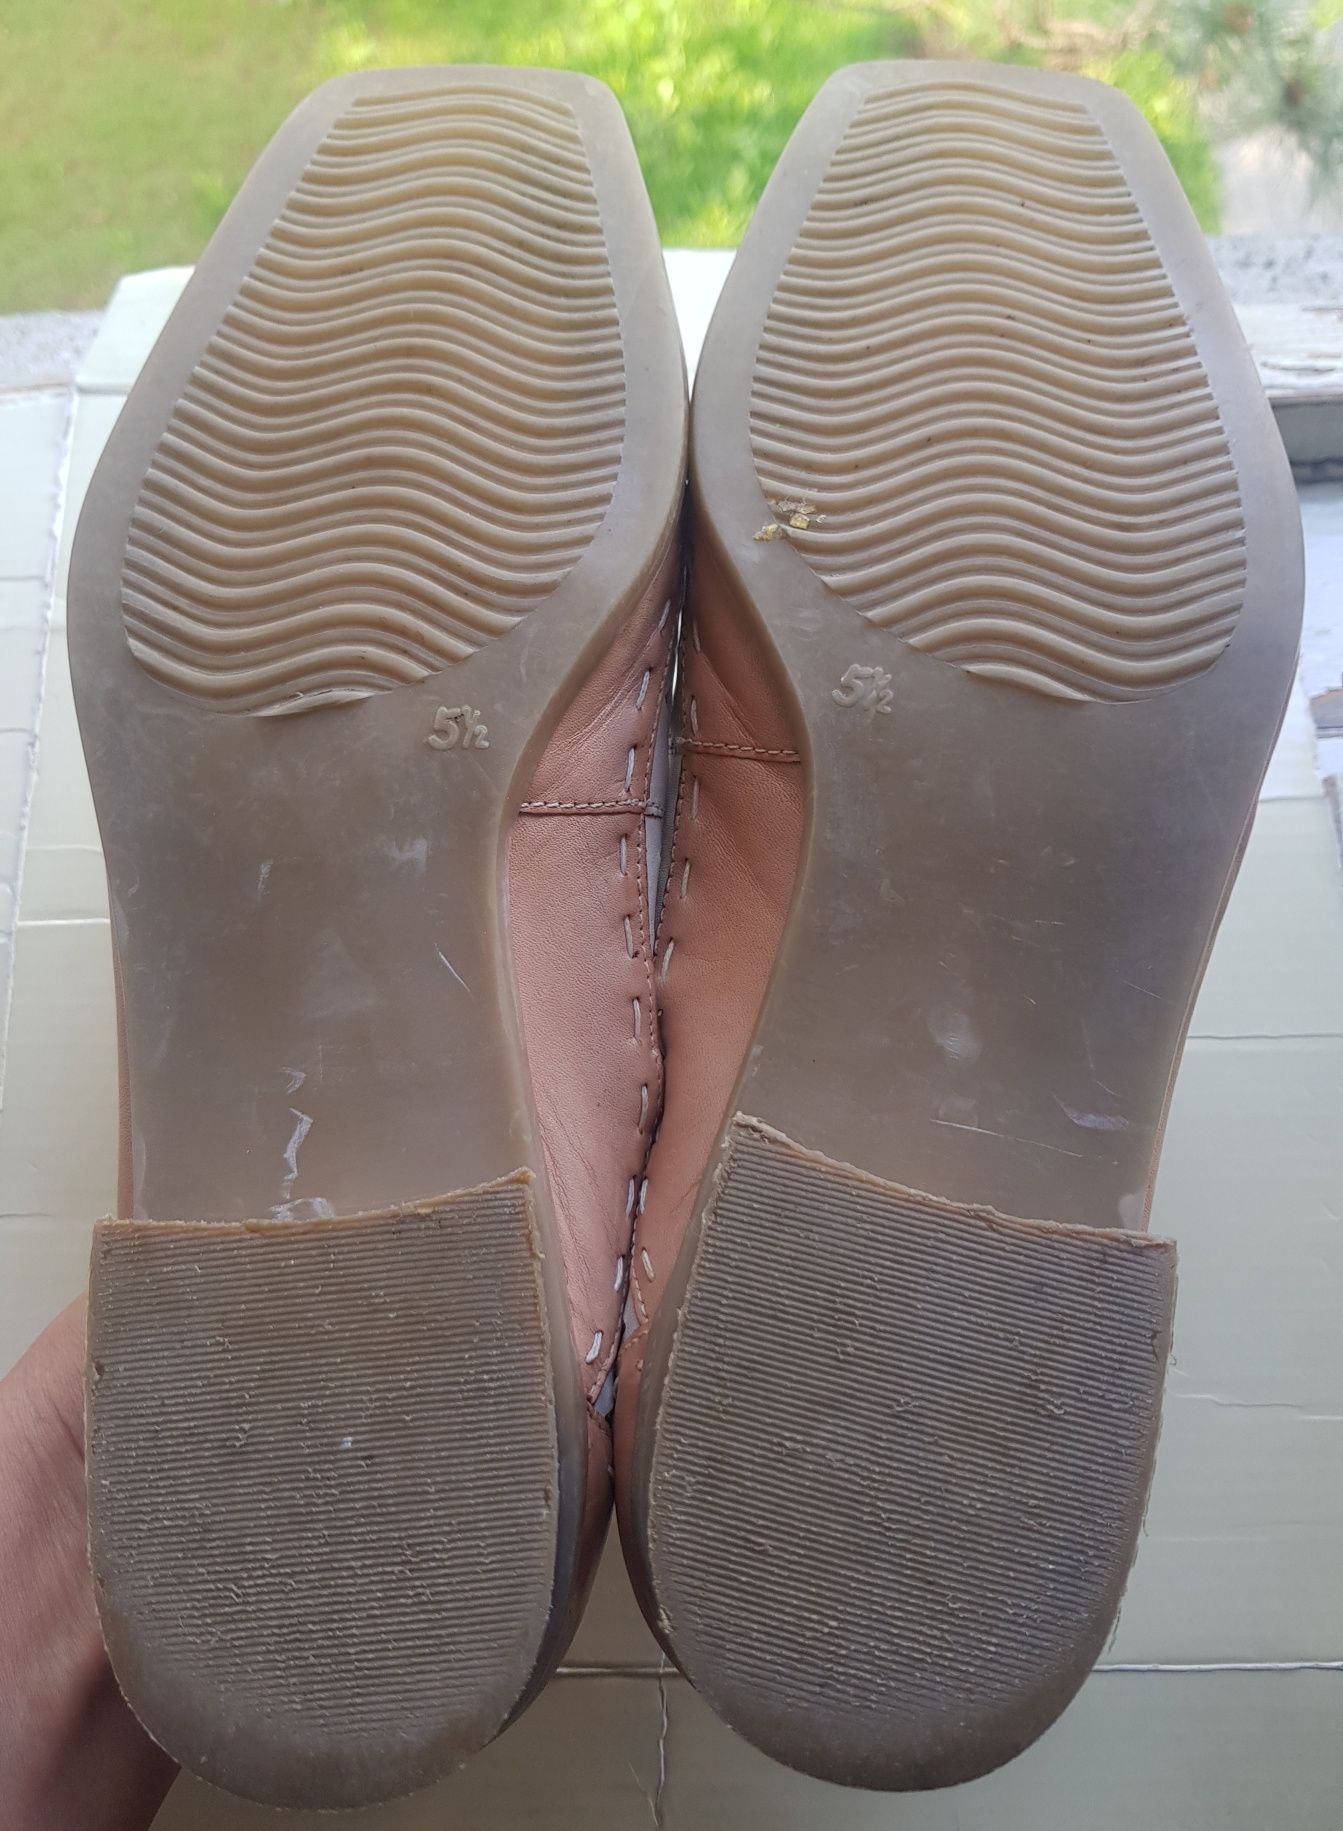 Pantofi Bama nr. 39, piele naturală interior/exterior, impecabili